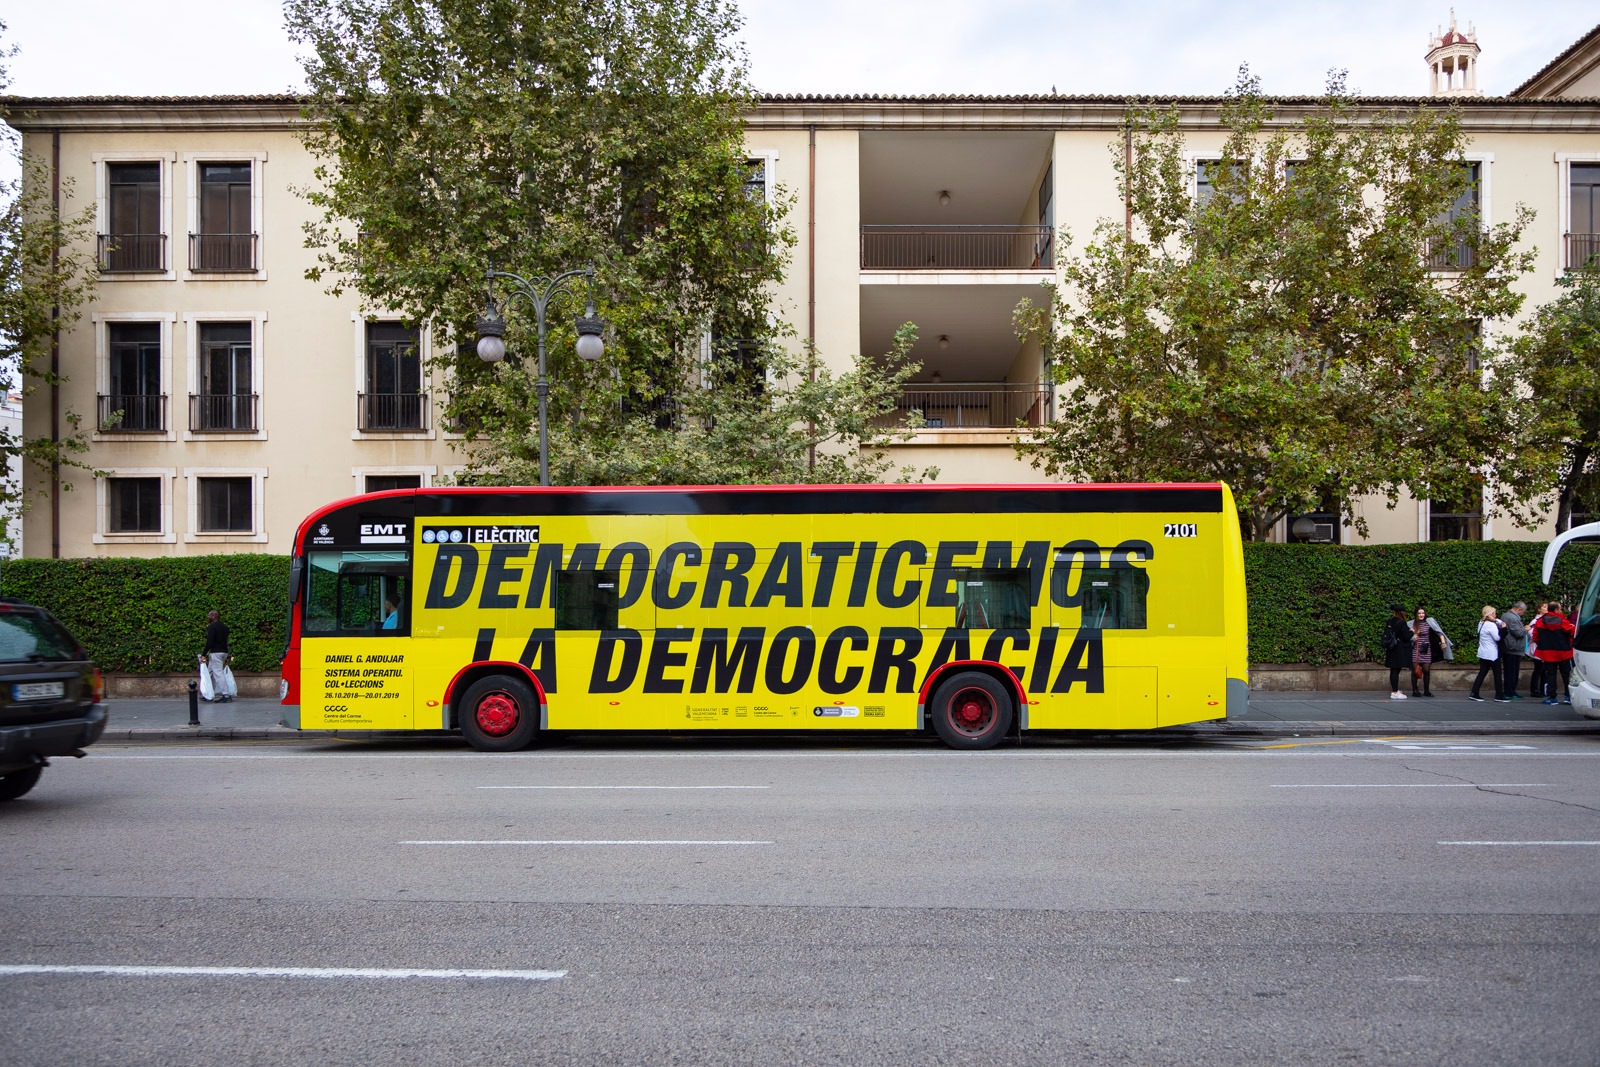 Daniel G. Andújar (2011) Democraticemos la democracia (Democratise democracy)